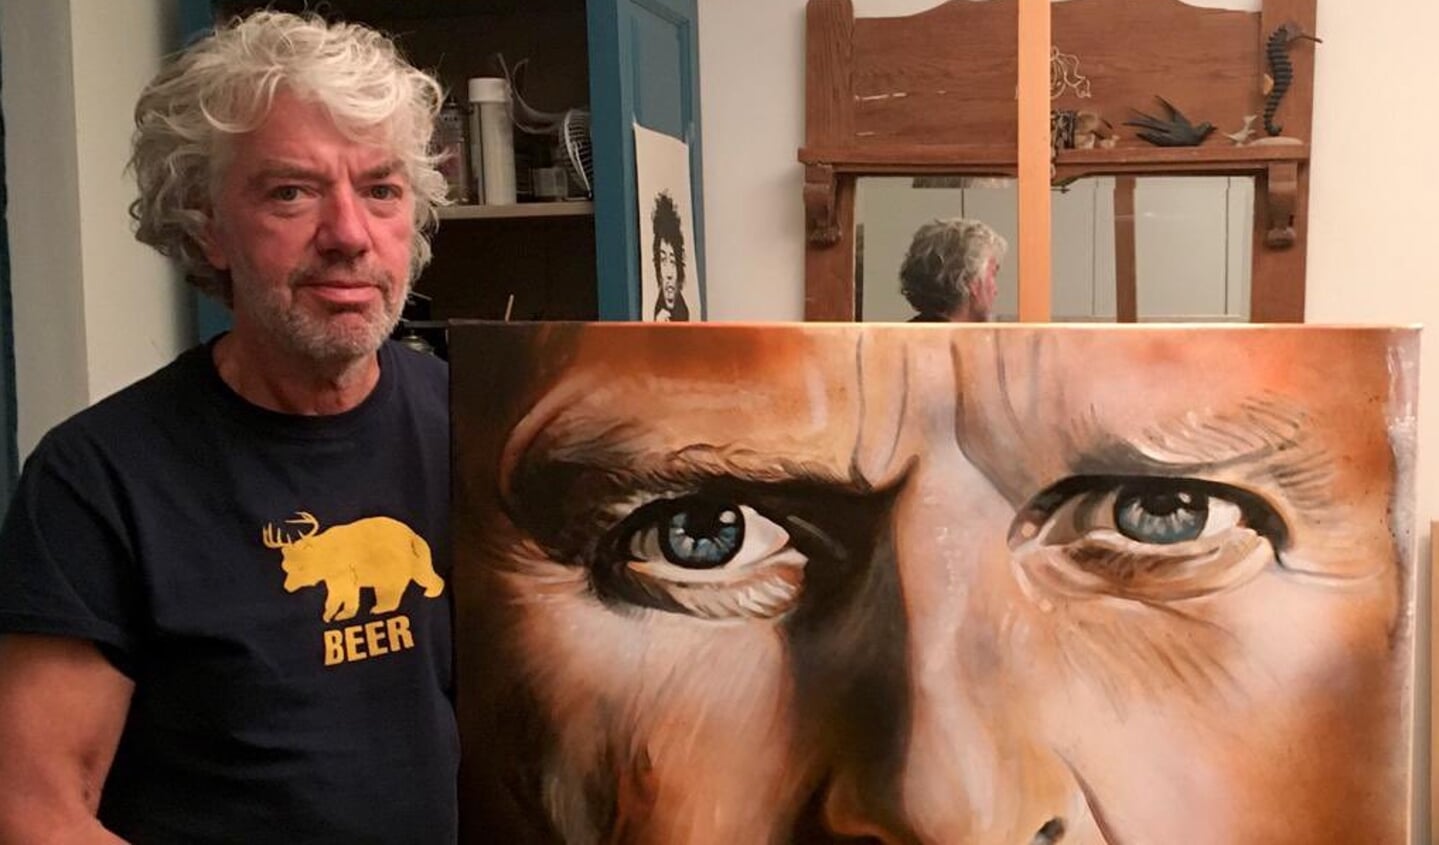 Kunstenaar Henk de Beer met zijn portret.